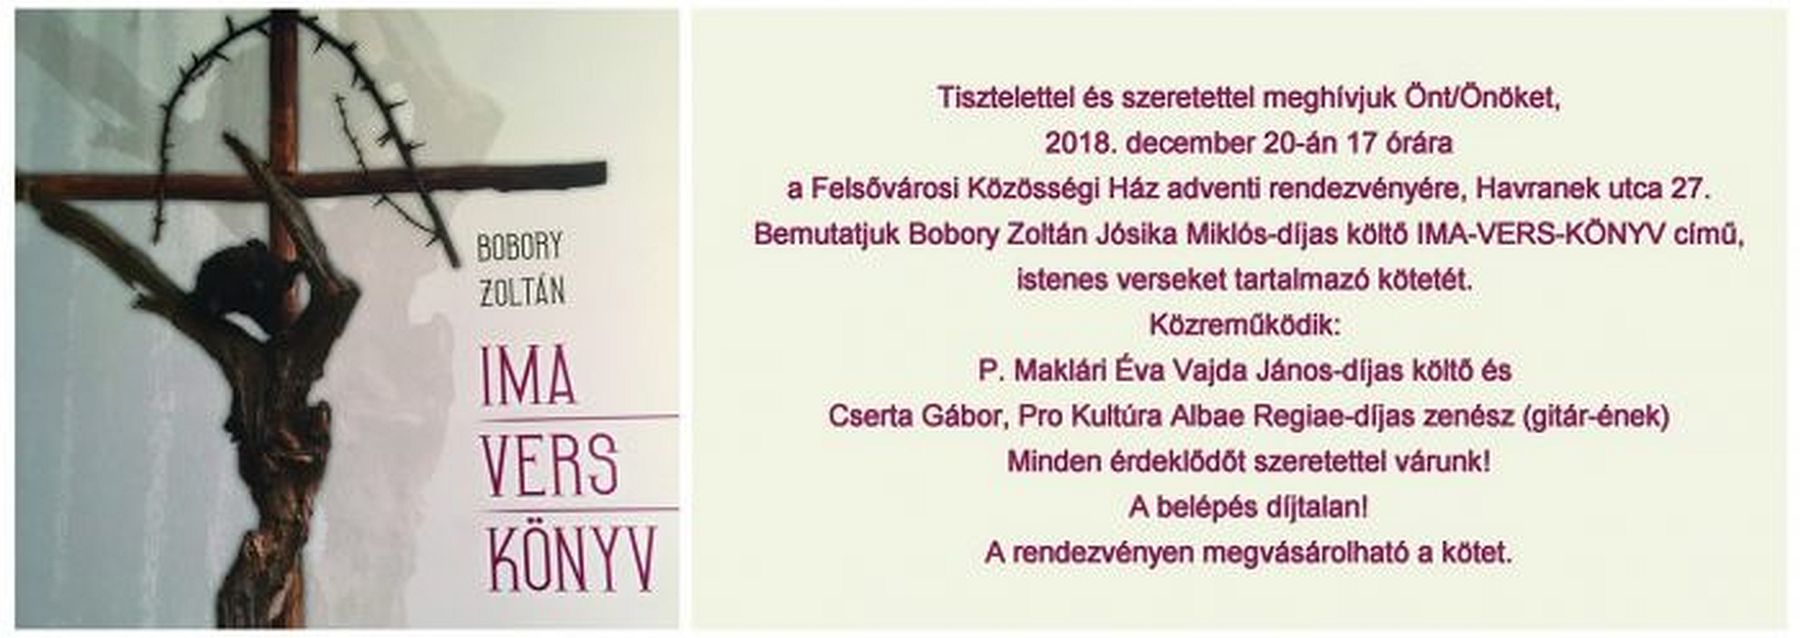 Ima-vers-könyv - Bobory Zoltán kötetét mutatják be a Felsővárosi Közösségi Házban